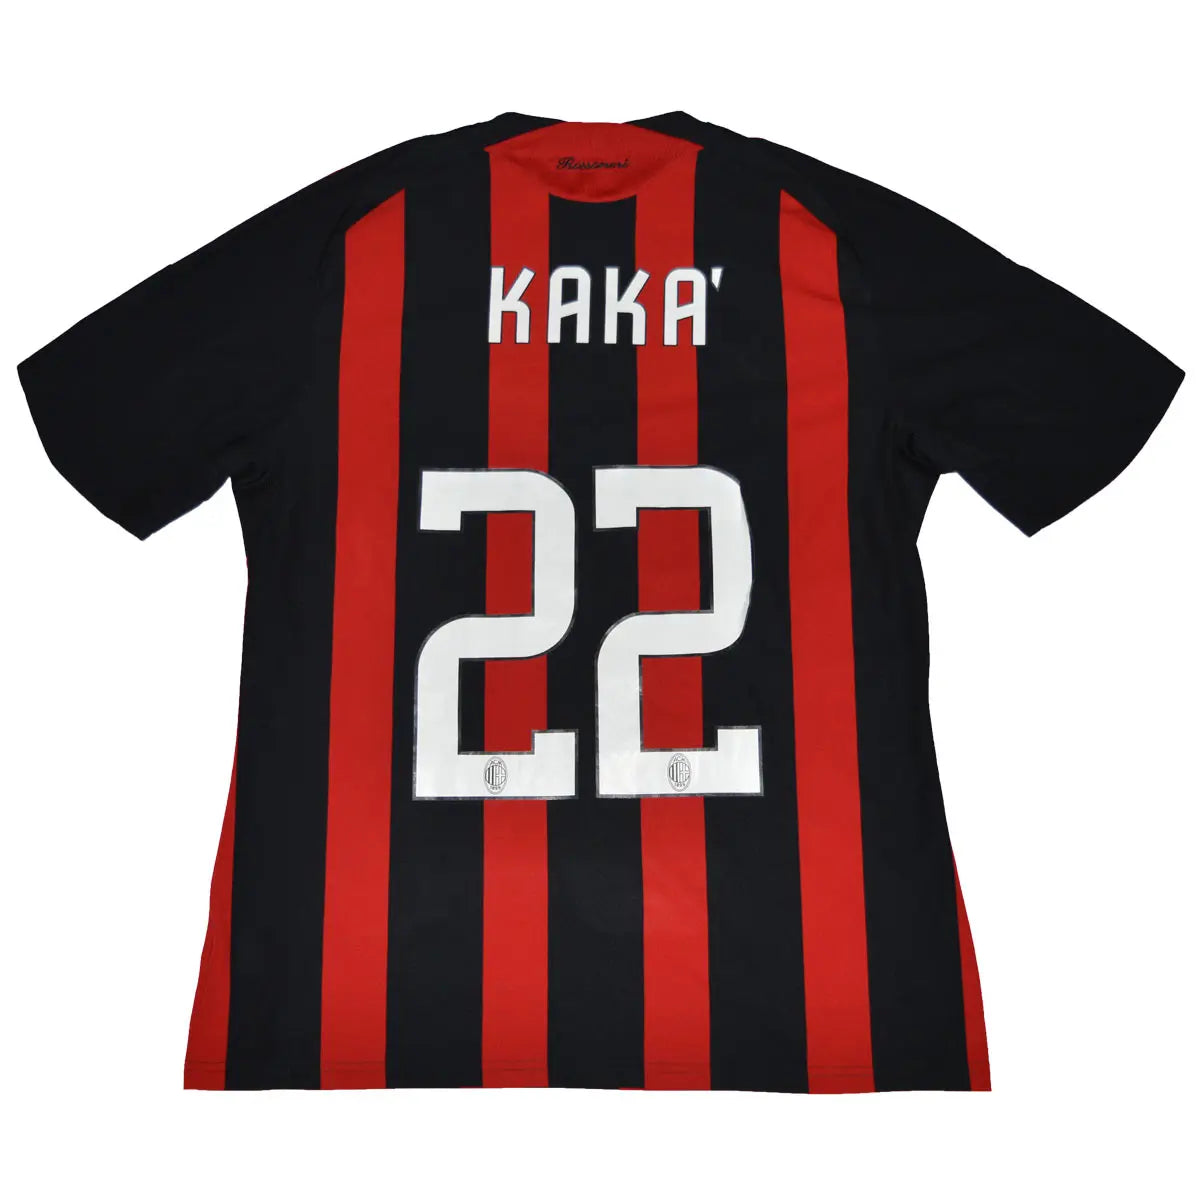 Maillot de foot rétro/vintage authentique rouge et noir adidas AC Milan domicile 2008 2009 Kaka flocage